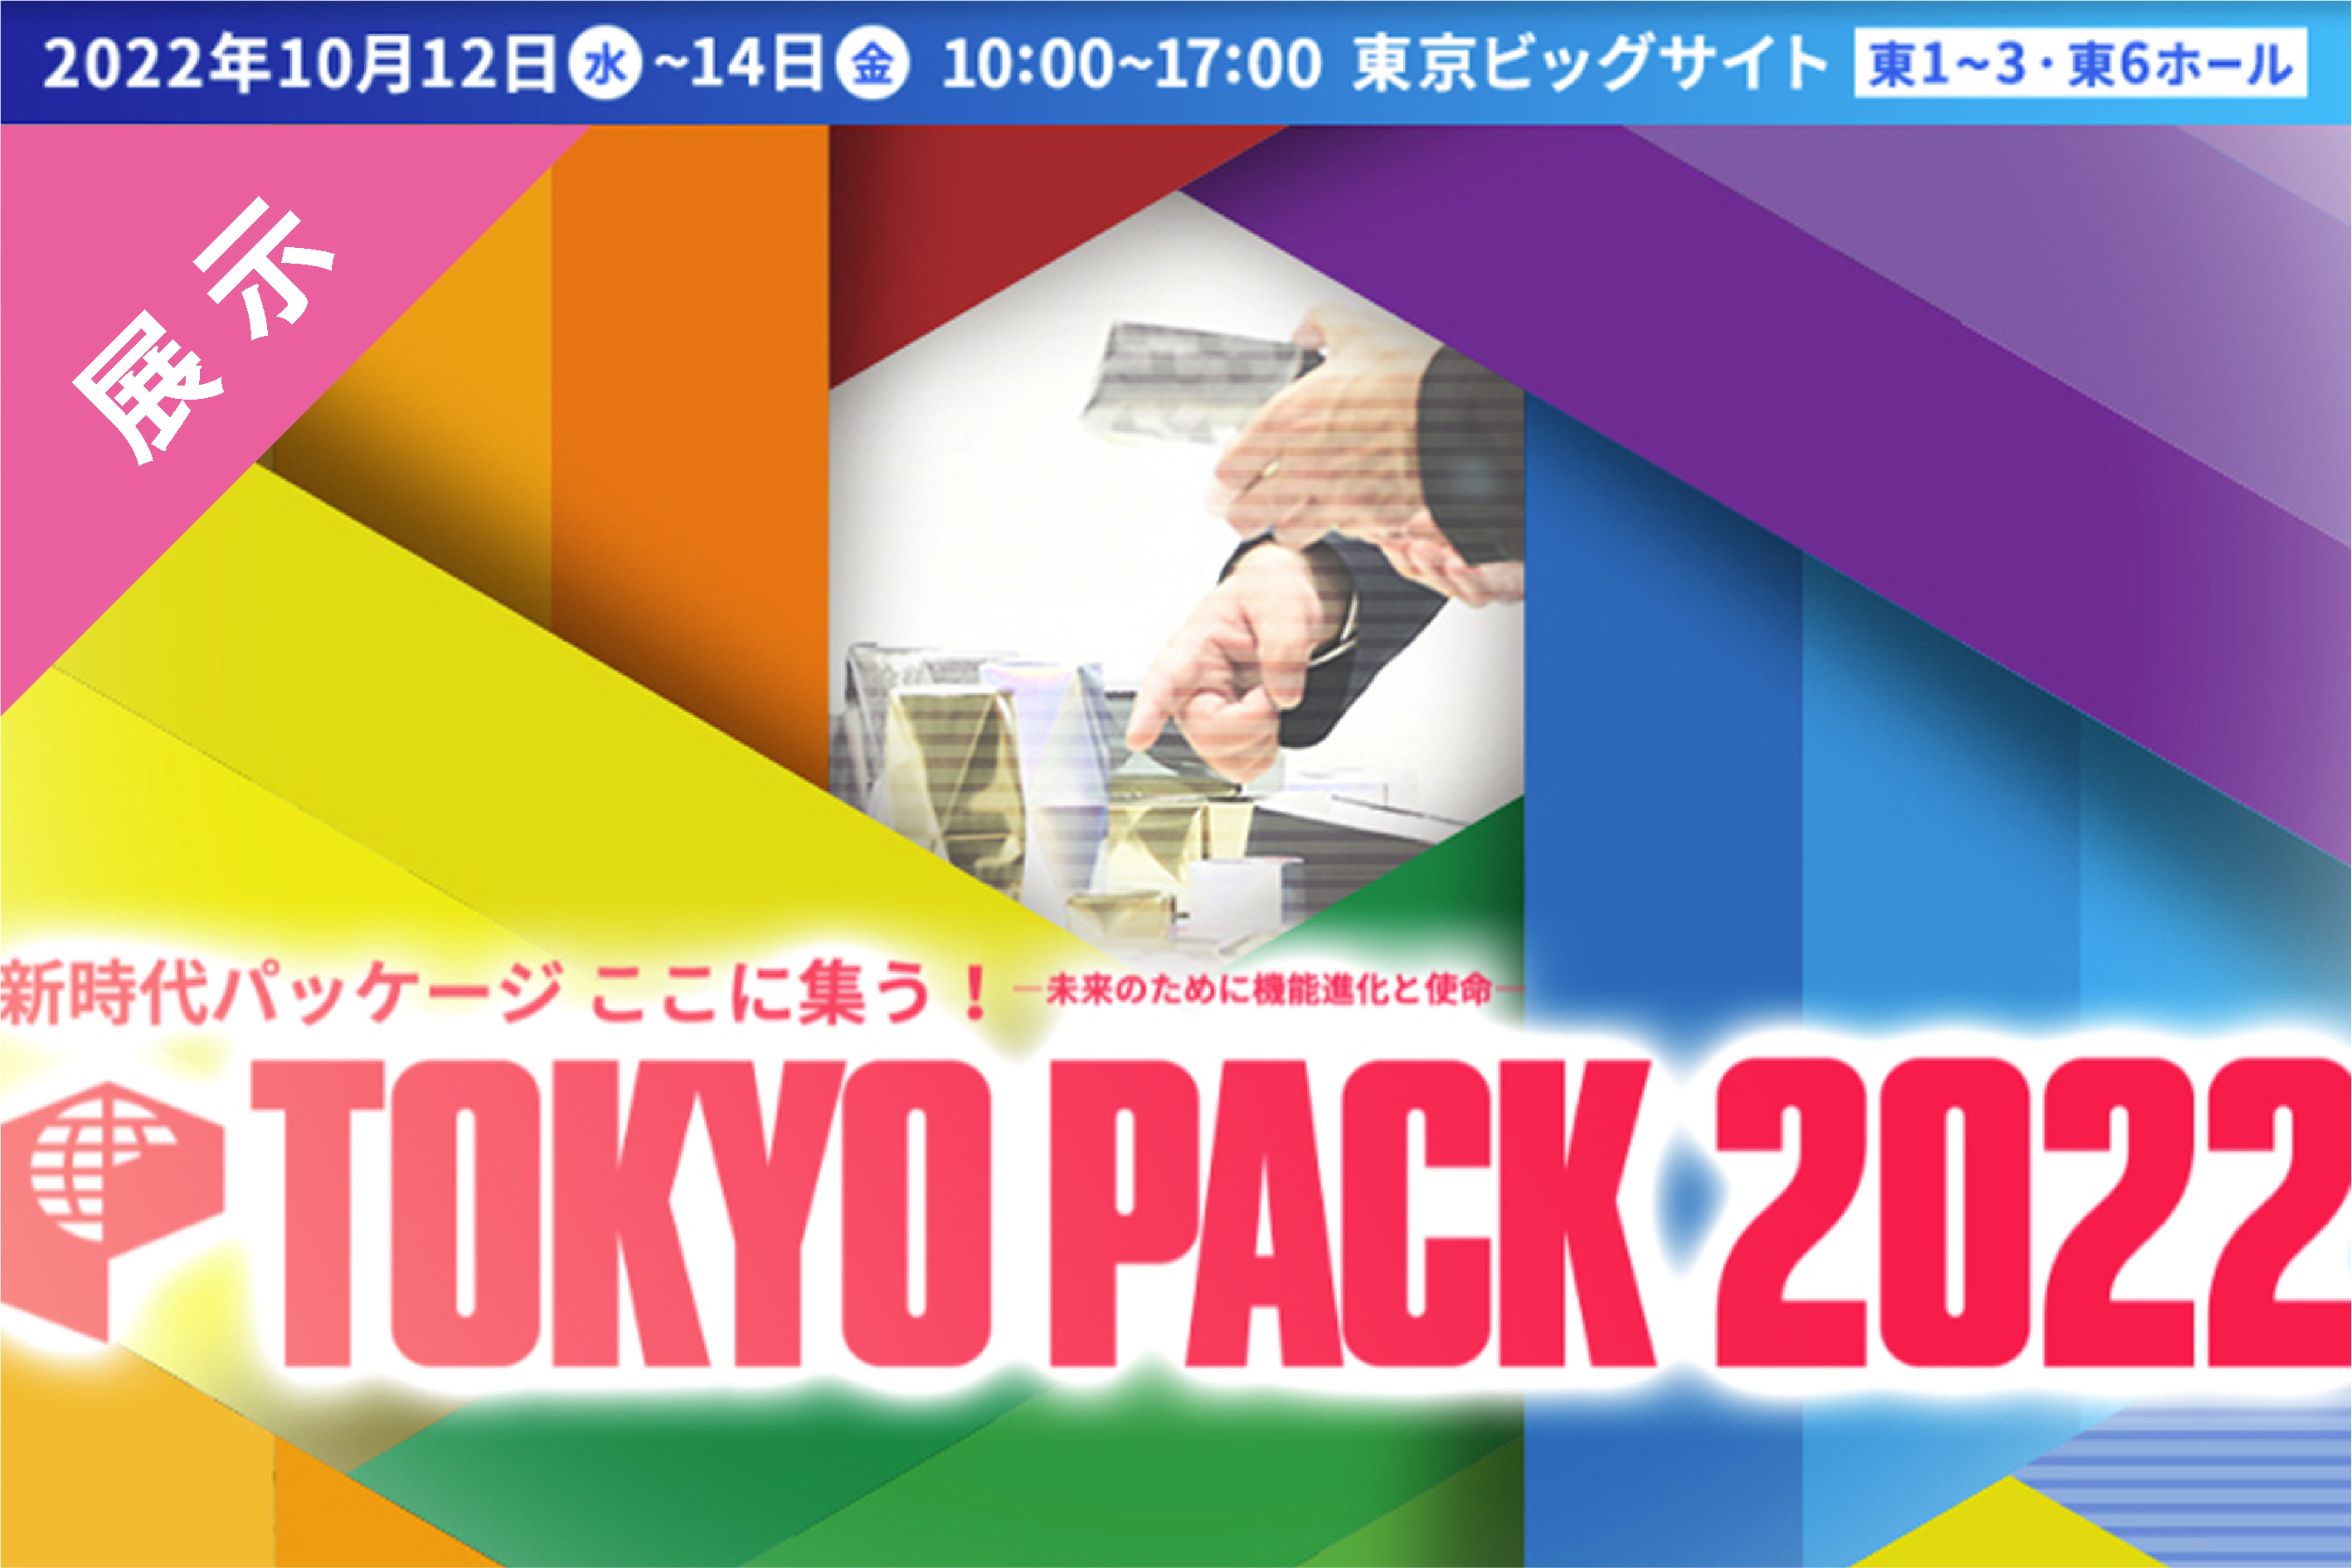  『TOKYO PACK 2022 （東京国際包装展）』出展のご案内  